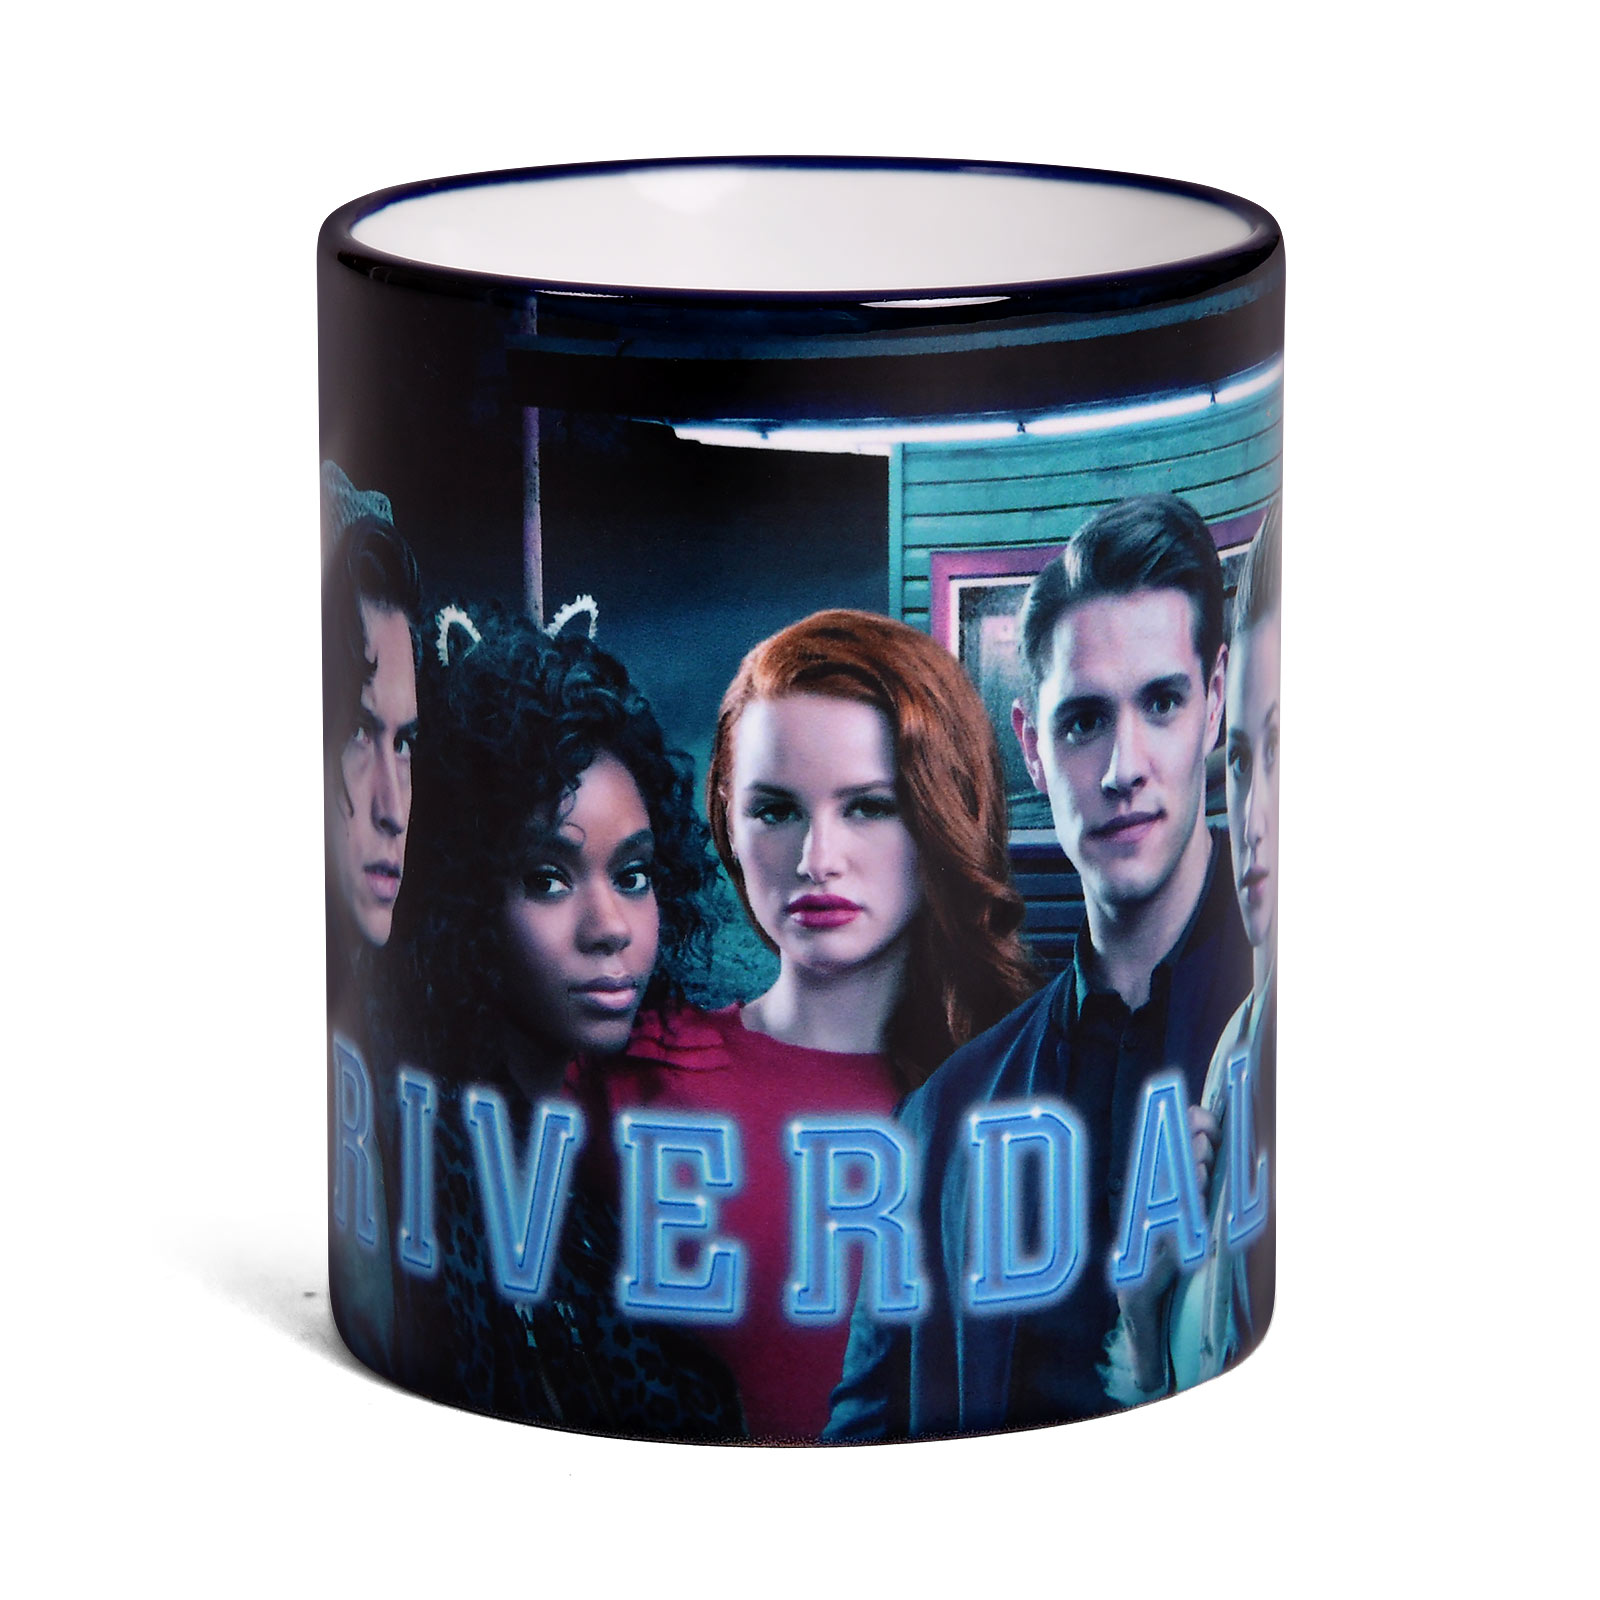 Riverdale - Season 2 Cover Mug